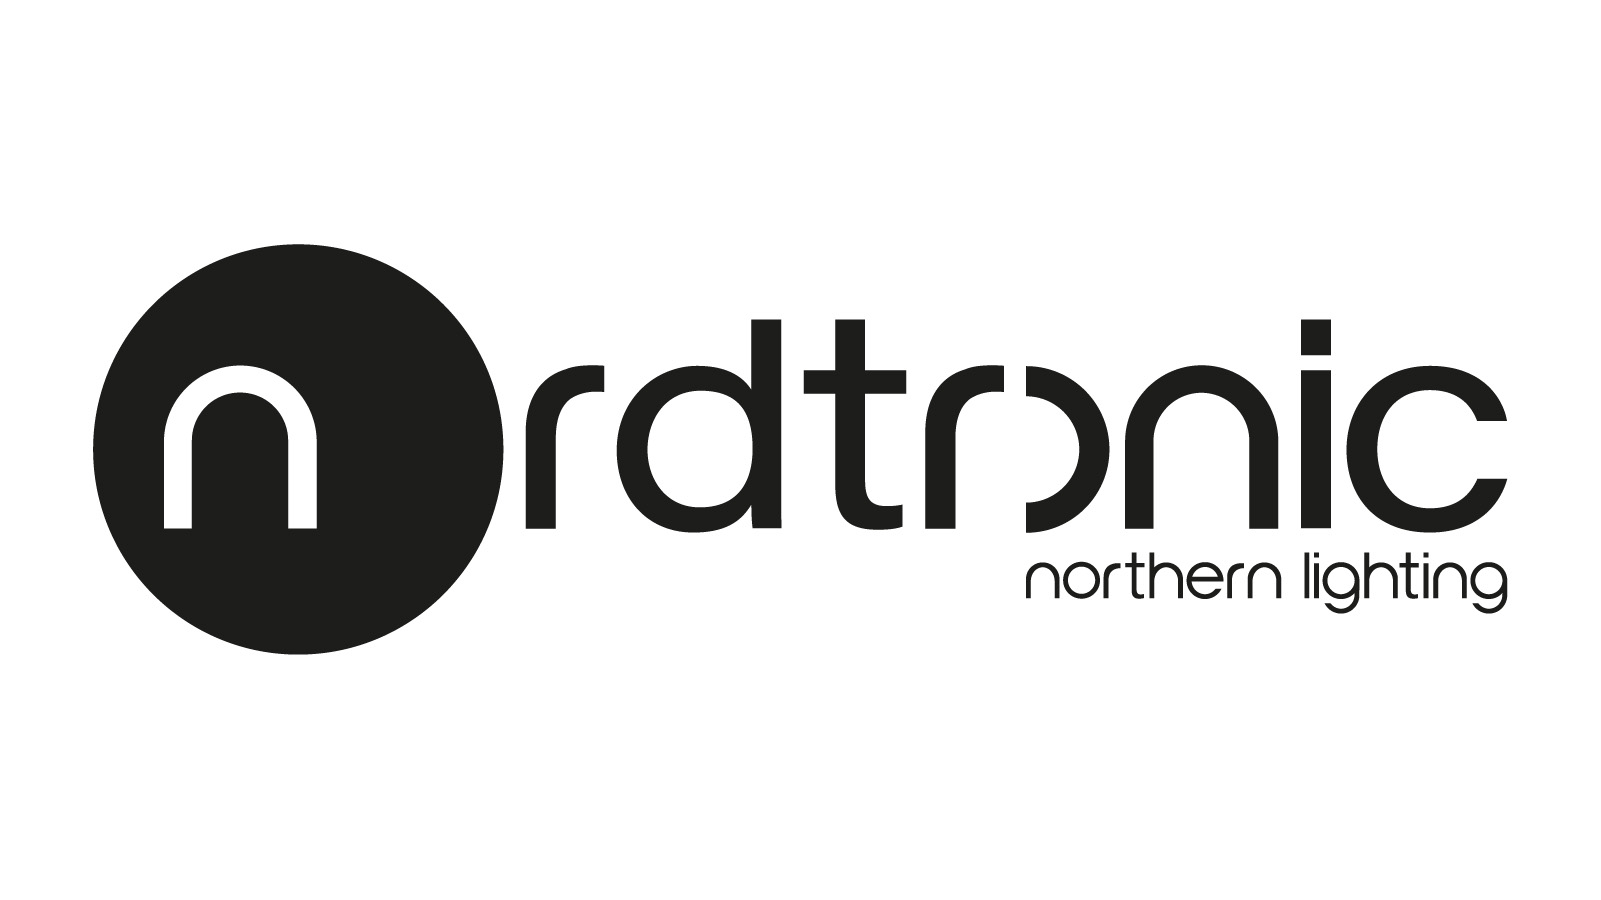 Nordtronic logos